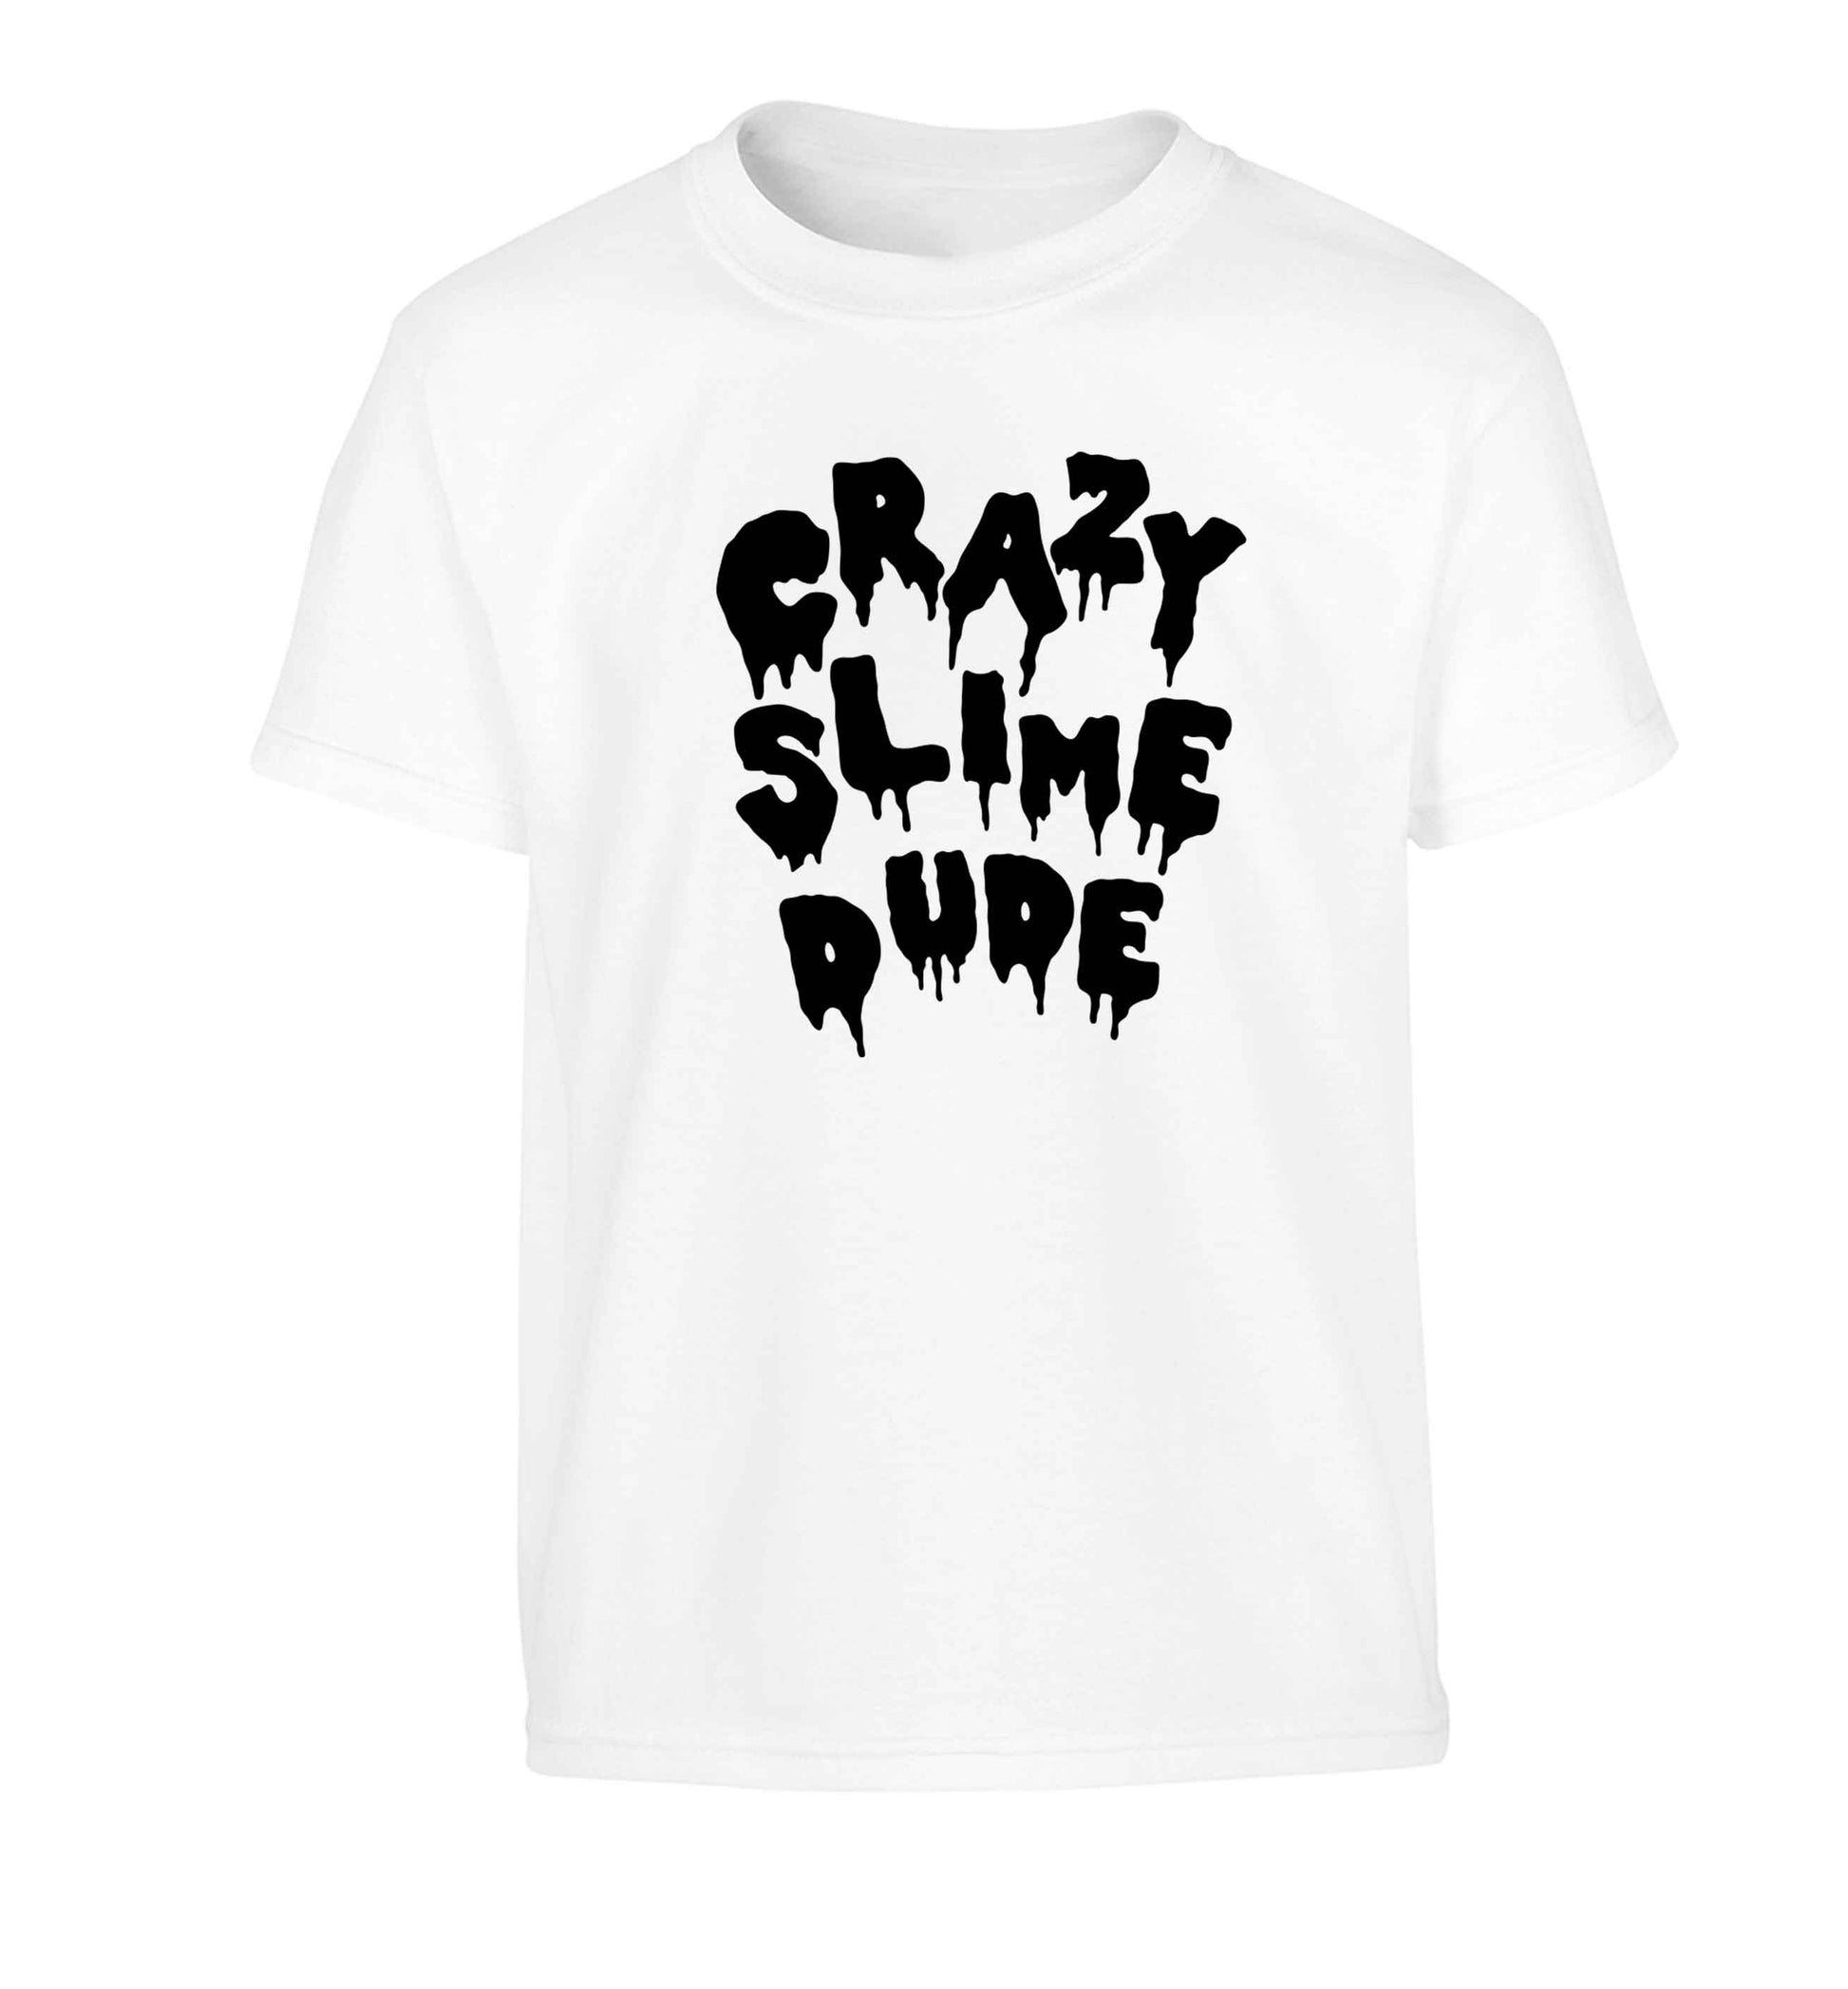 Crazy slime dude Children's white Tshirt 12-13 Years